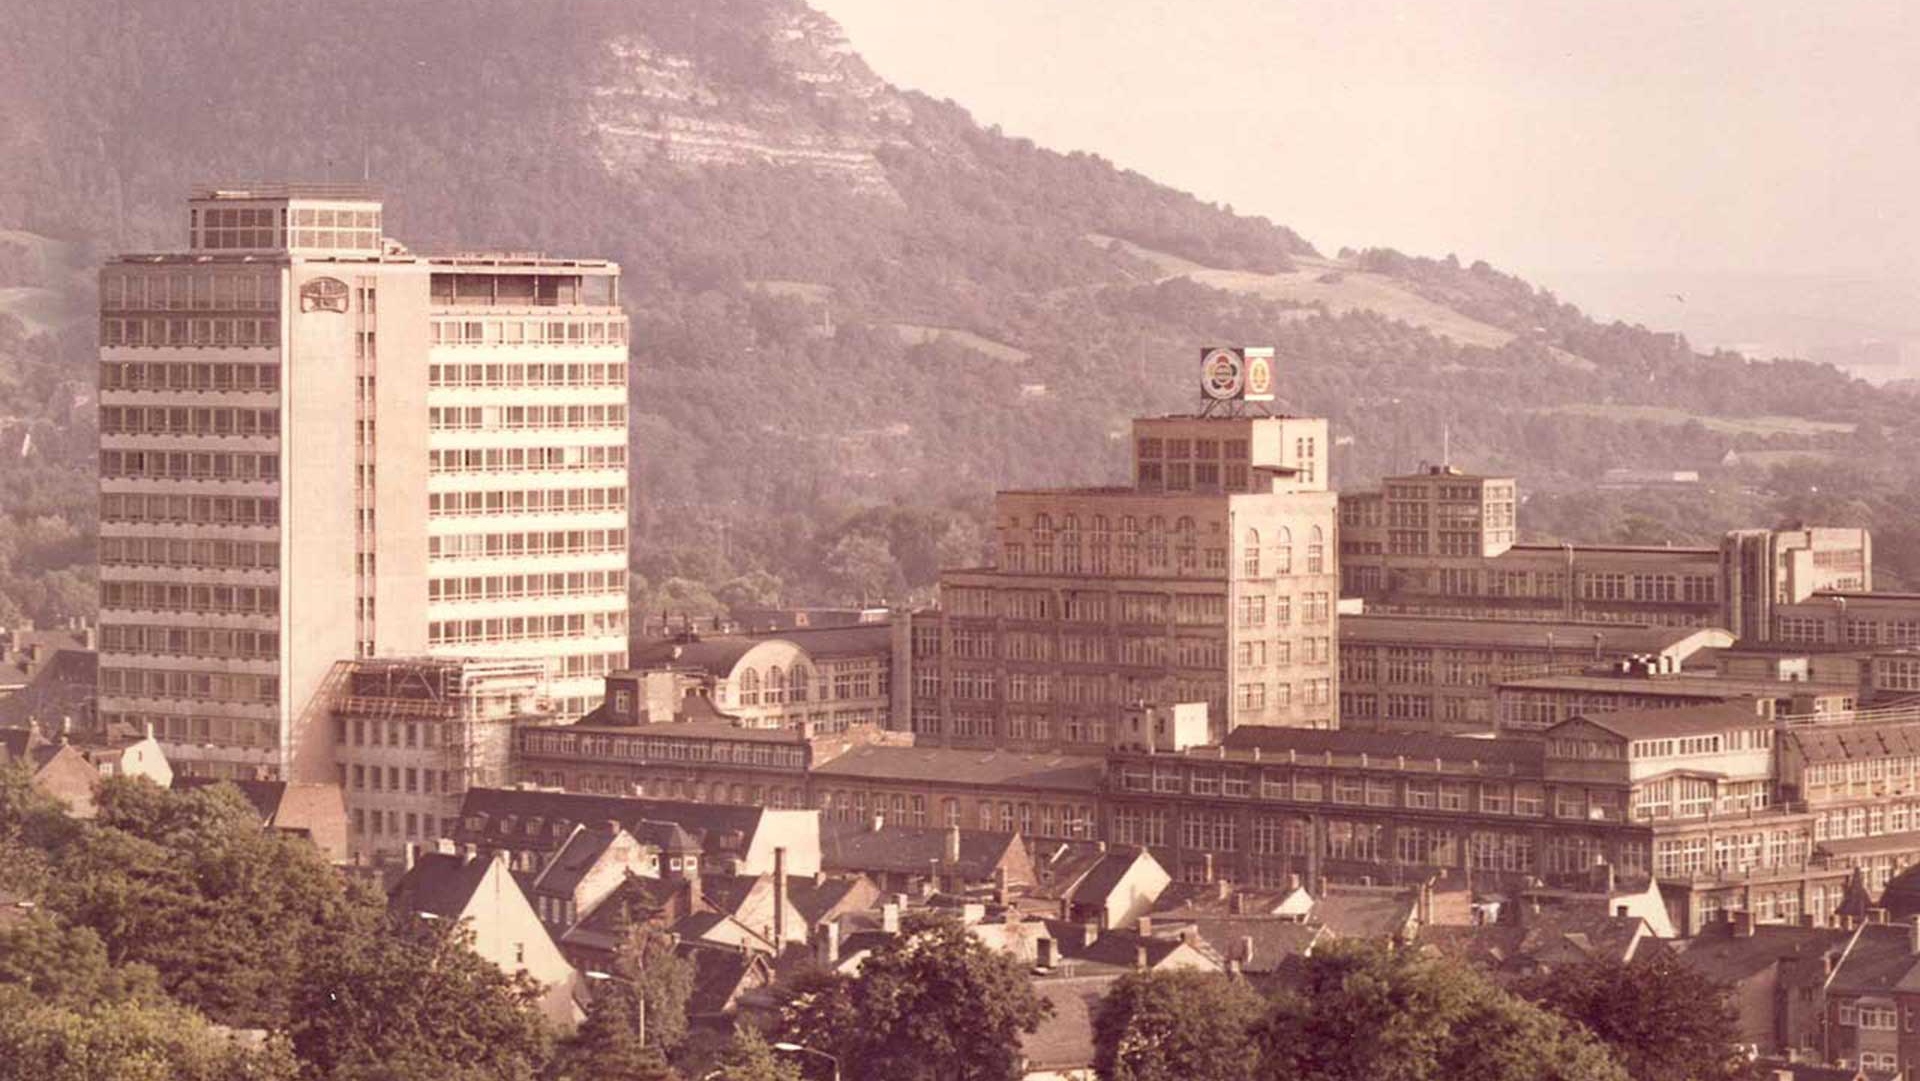 VEB Carl Zeiss Jena | Das Unternehmen in Jena wurde 1948 verstaatlicht. Seit 1965 wurde es zum führenden Kombinat im Bereich der Optik umgeformt, das 1989 mehr als 70.000 Beschäftigte hatte.